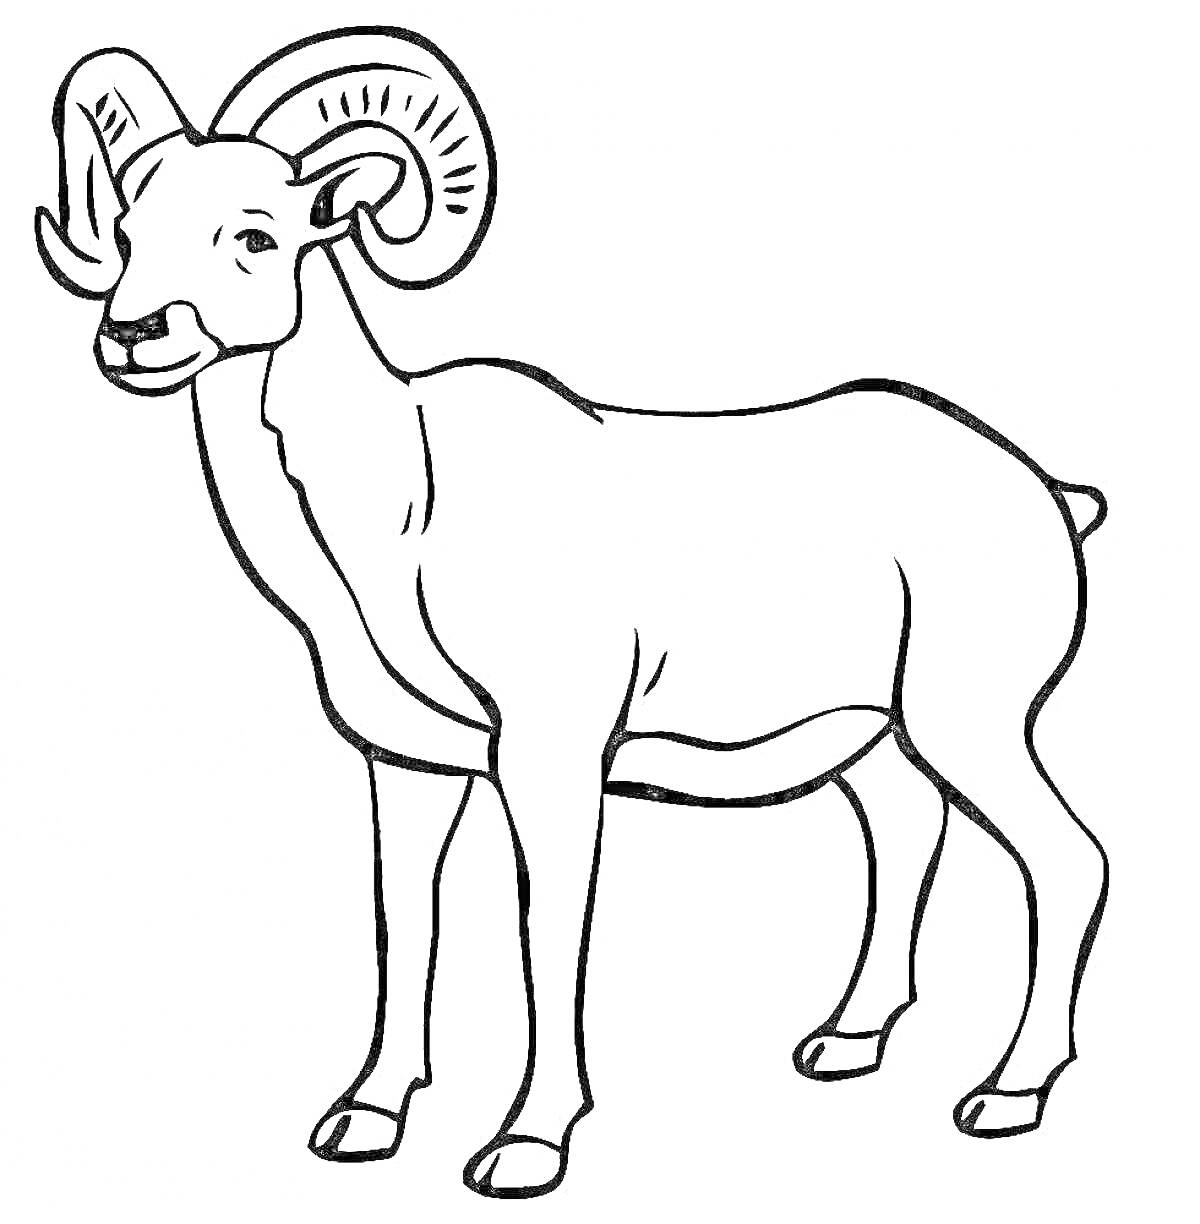 Раскраска Алтайский горный баран, стоящий в профиль, с крупными завитыми рогами, поднятой правой передней лапой и хвостом